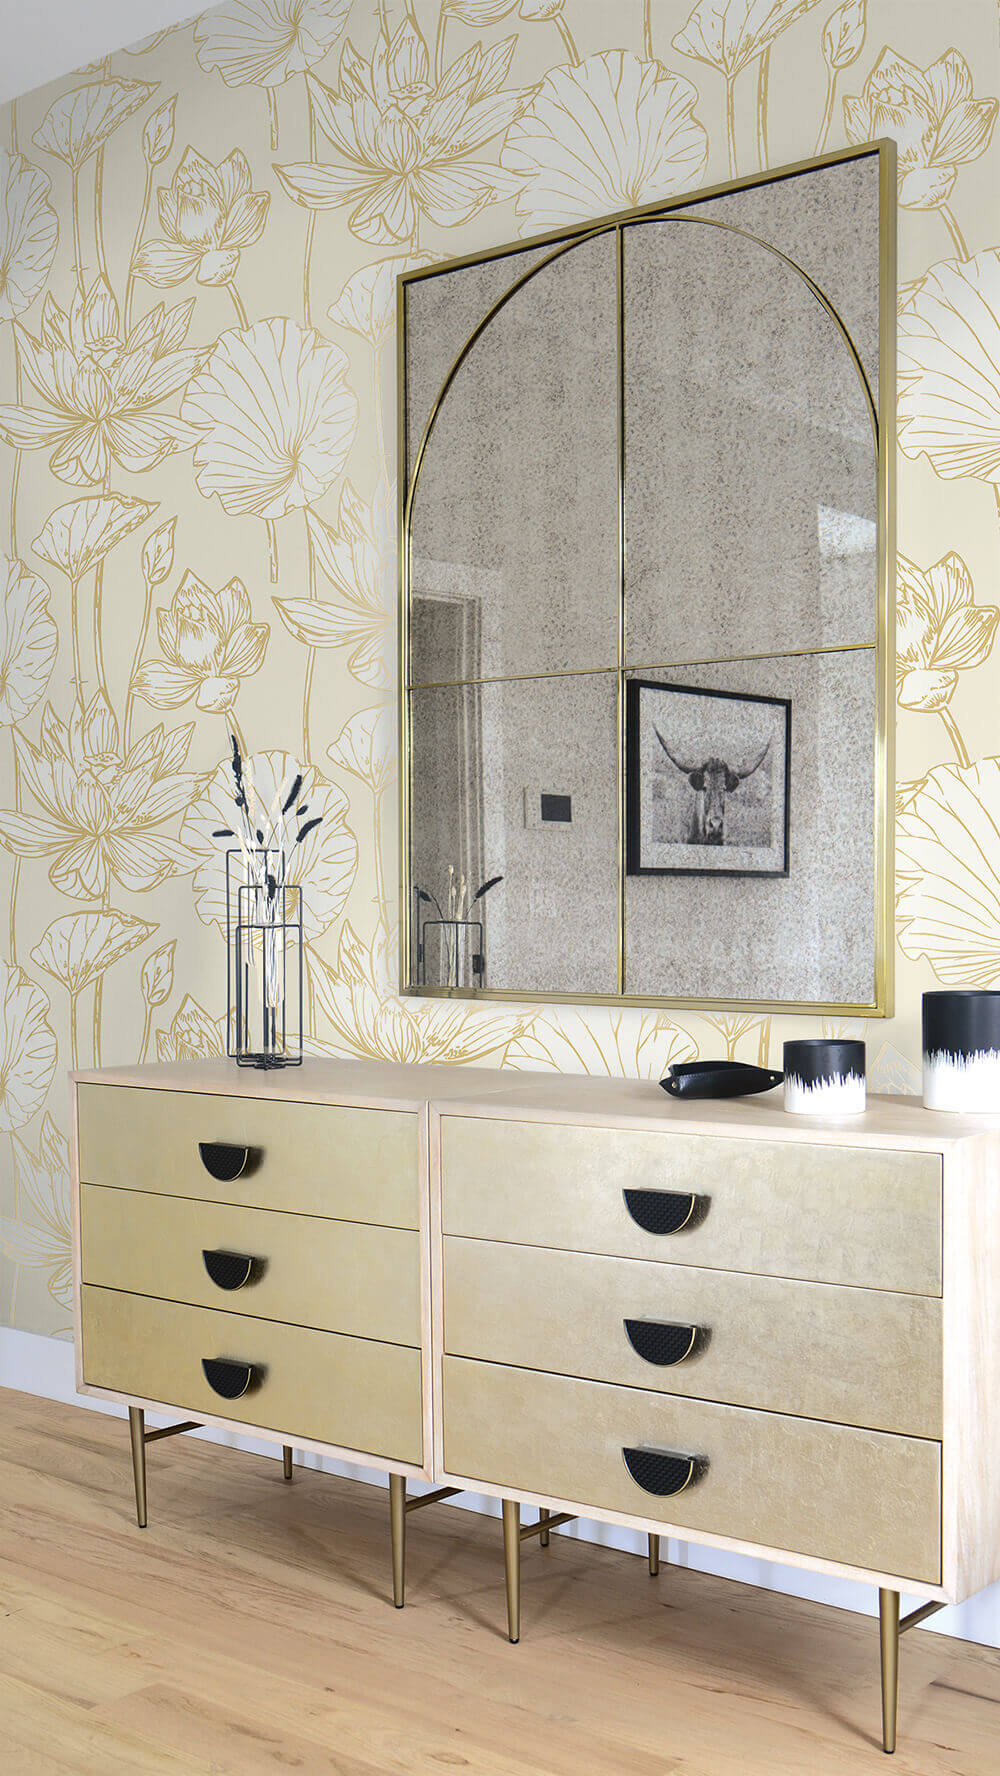 Seabrook Designs Lotus Floral Metallic Gold & Off-White Wallpaper